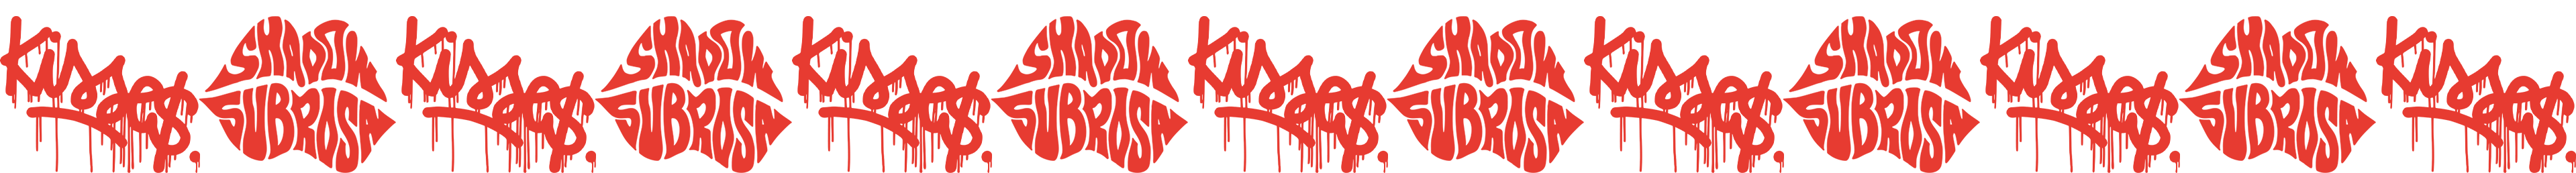 kisses banner logo